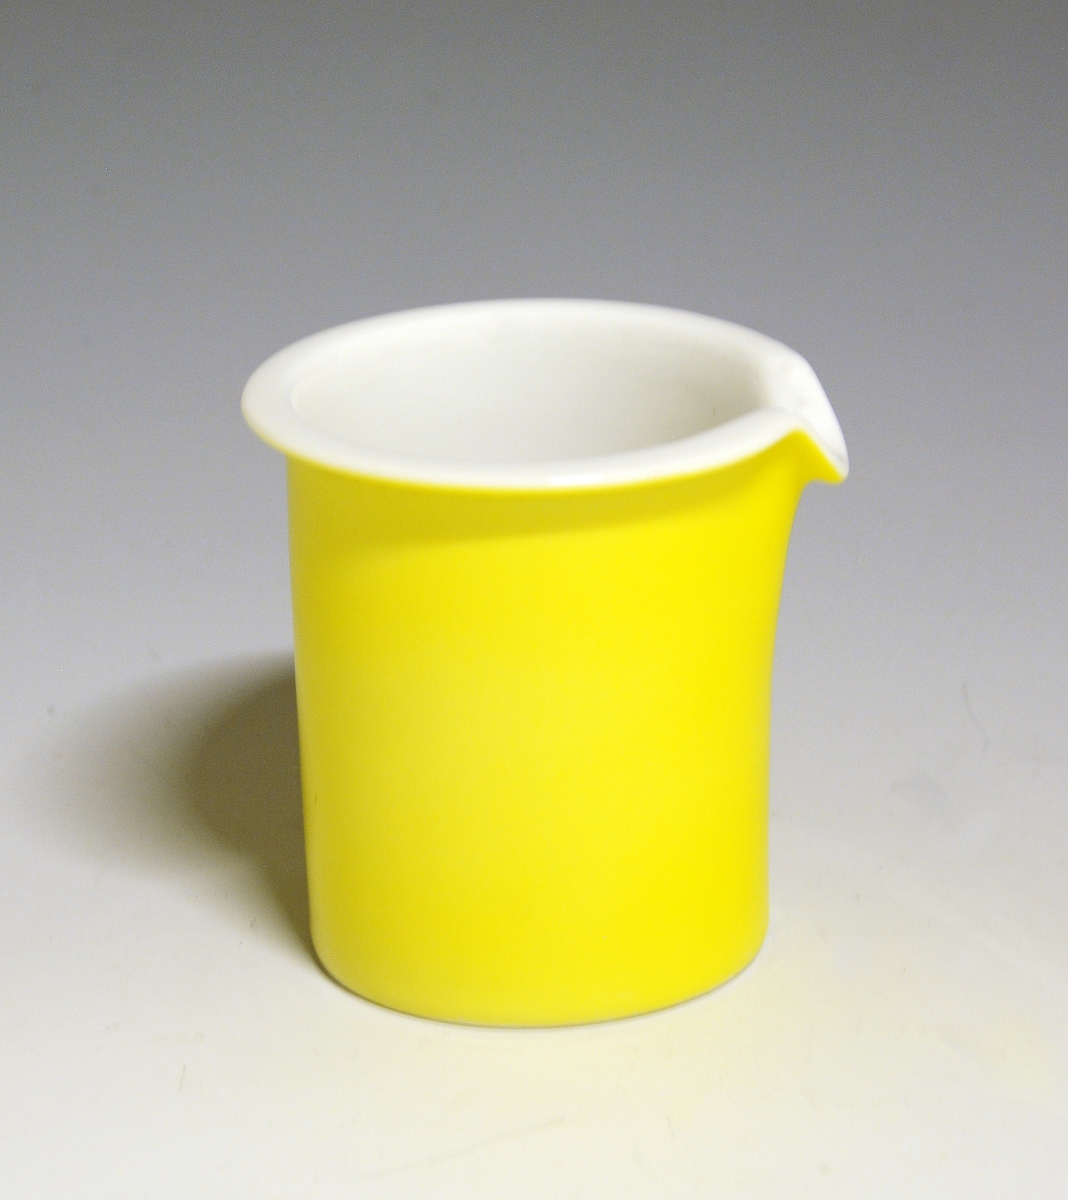 Fløtemugge av porselen. Hvit glasur. Uten hank. Heldekkende gult utvendig.
Modell: Saturn av Grete Rønning.
Dekor: Citron av Ferdinand Finne.